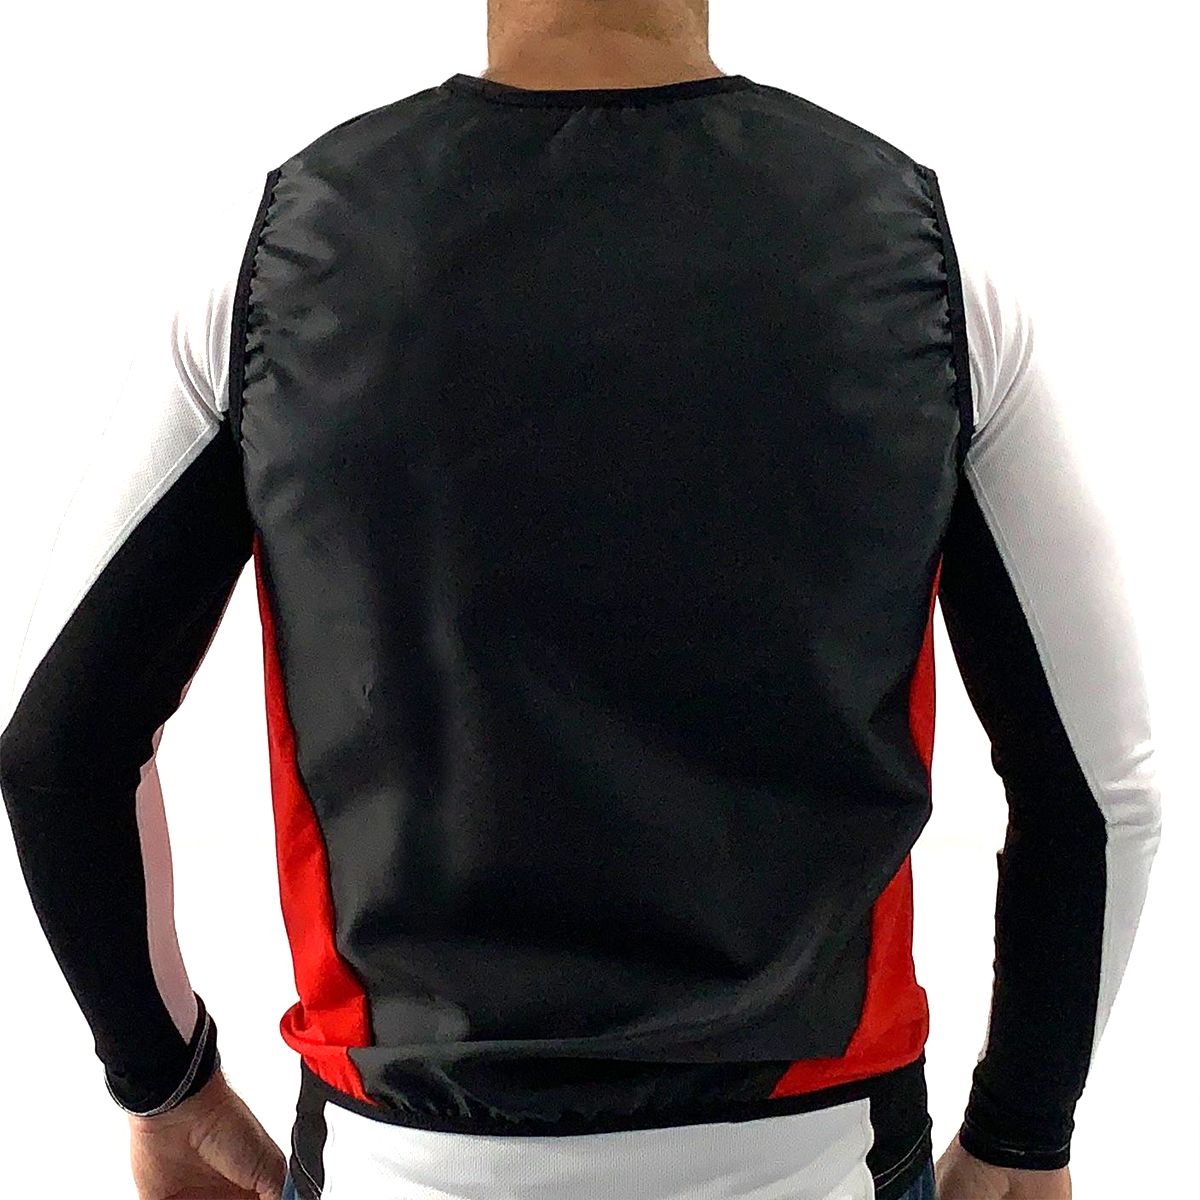 Nelo Wind vest for racing kayak - red, back